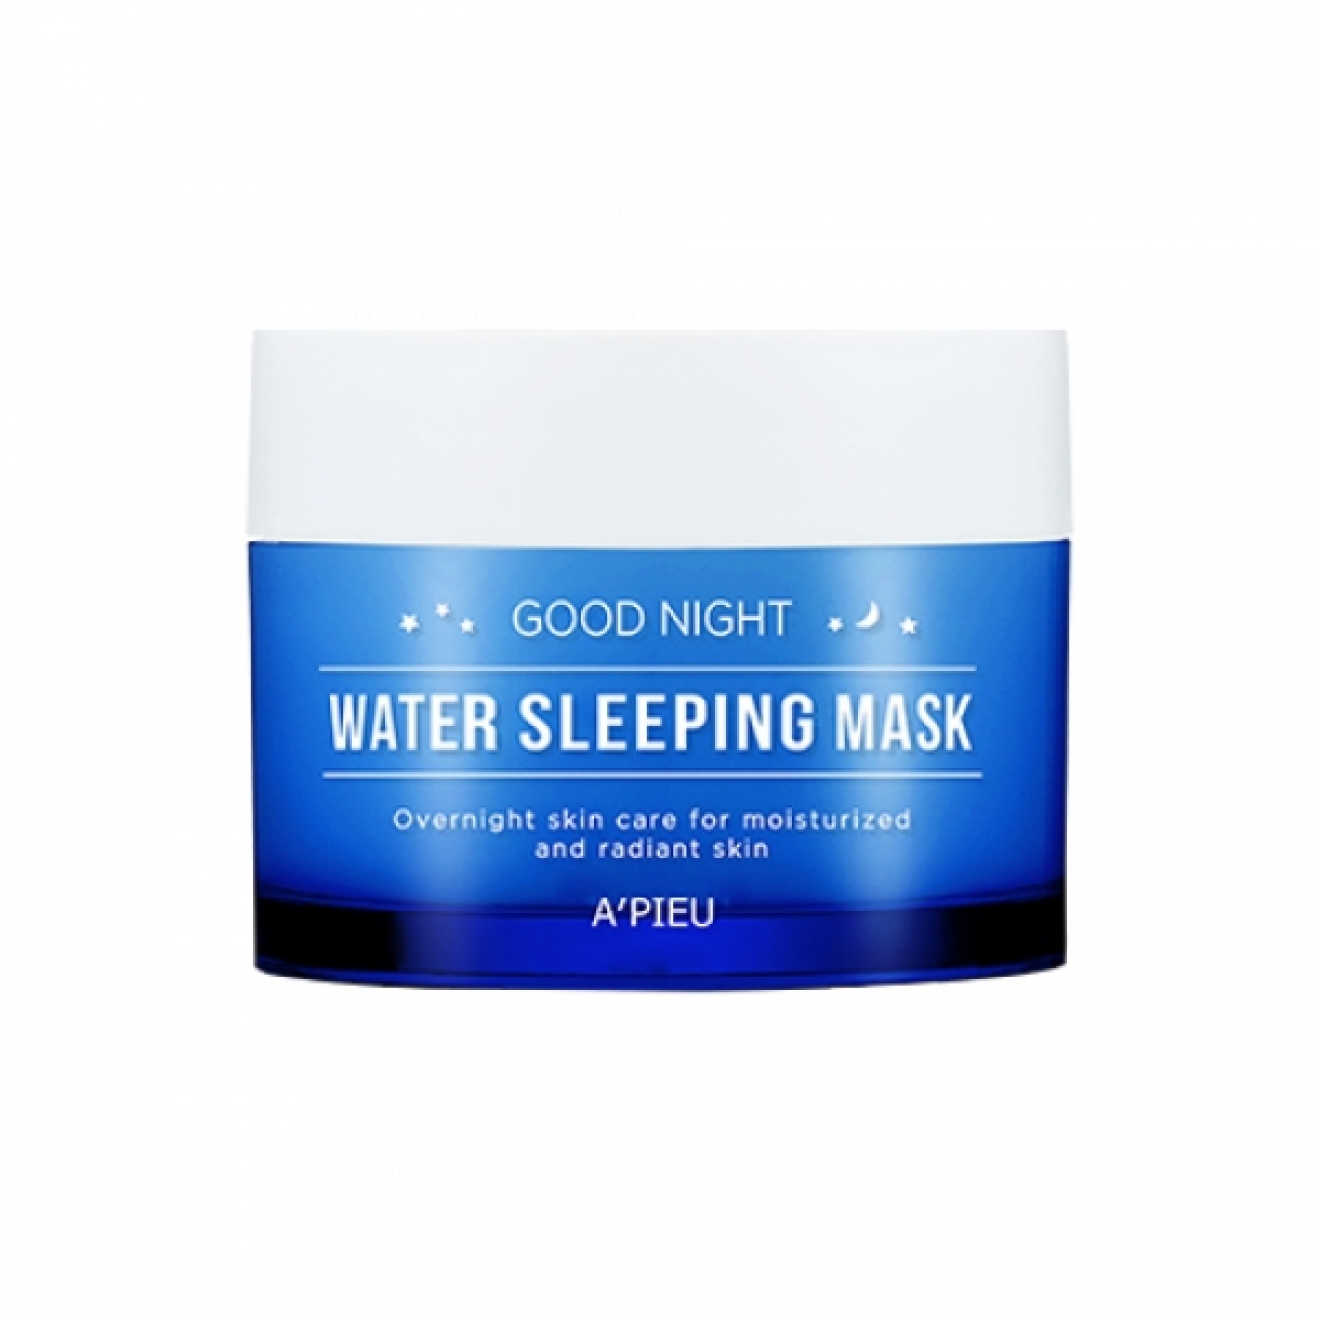 Увлажняющая ночная маска - Apieu, Good Night Water Sleeping Mask, 105 мл